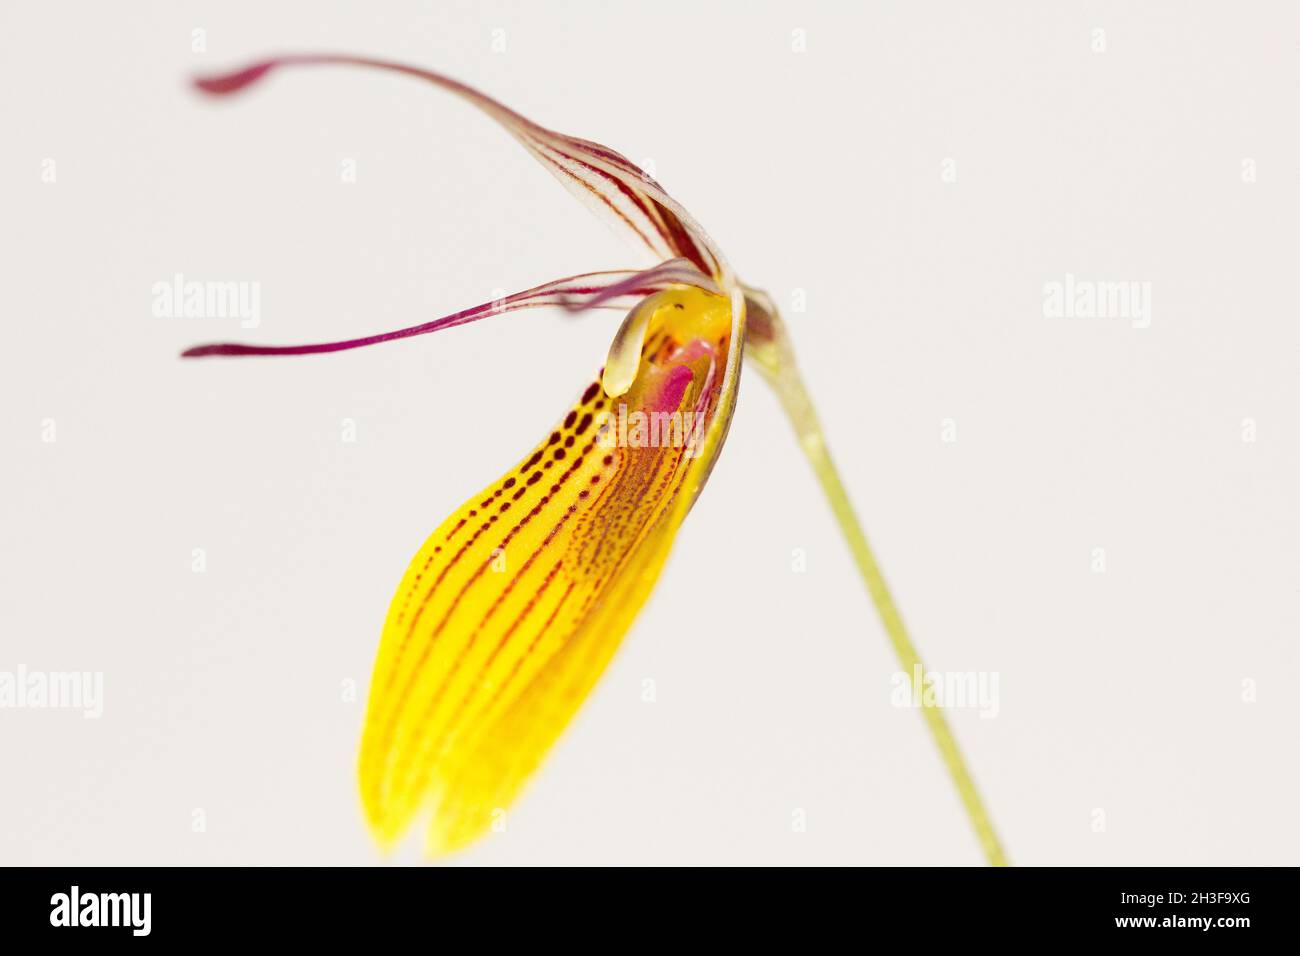 Restrepia orchid (Restrepia striata) Stock Photo